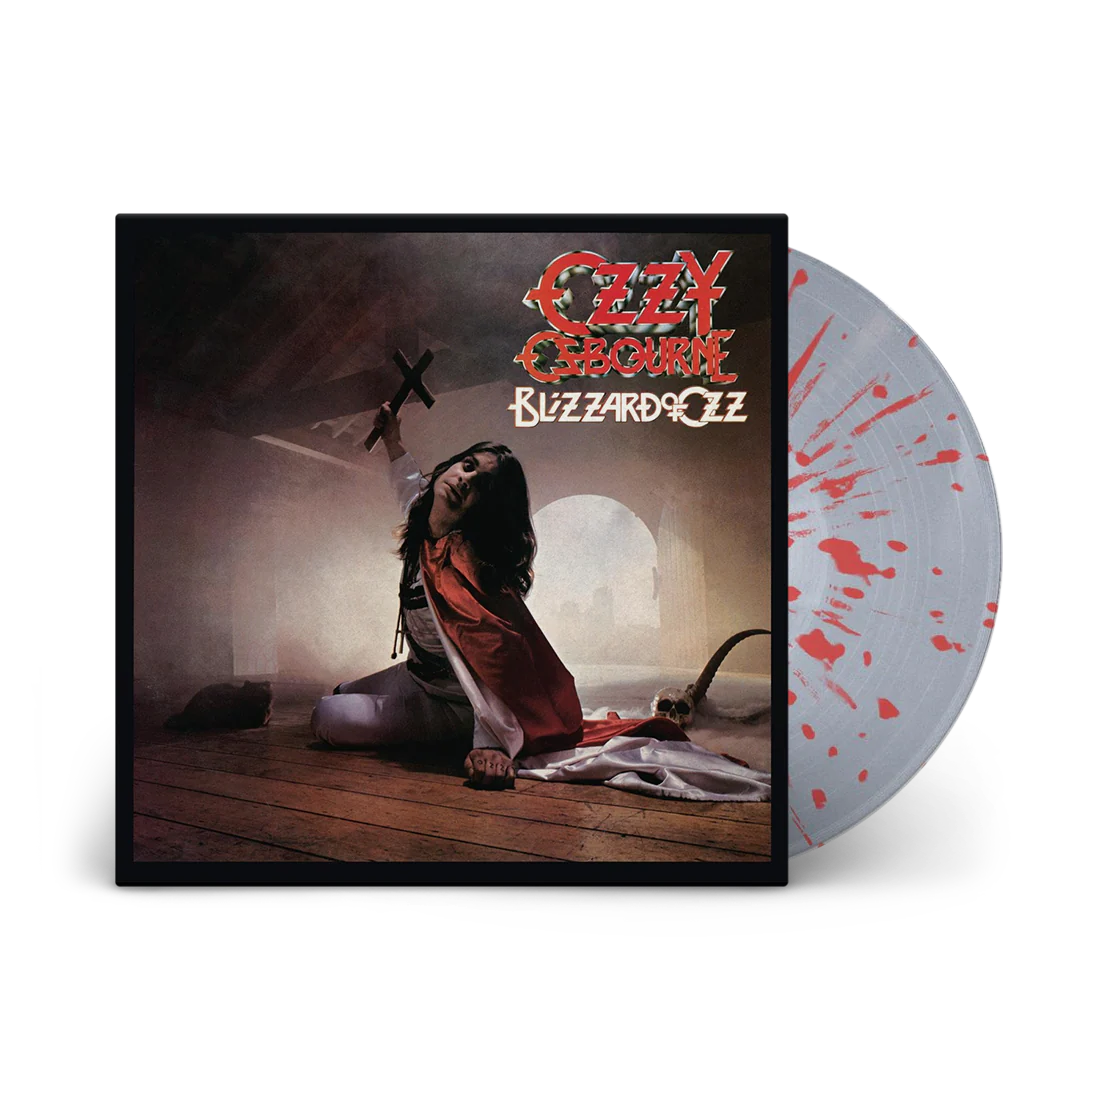 Osbourne, Ozzy - Blizzard Of Ozz